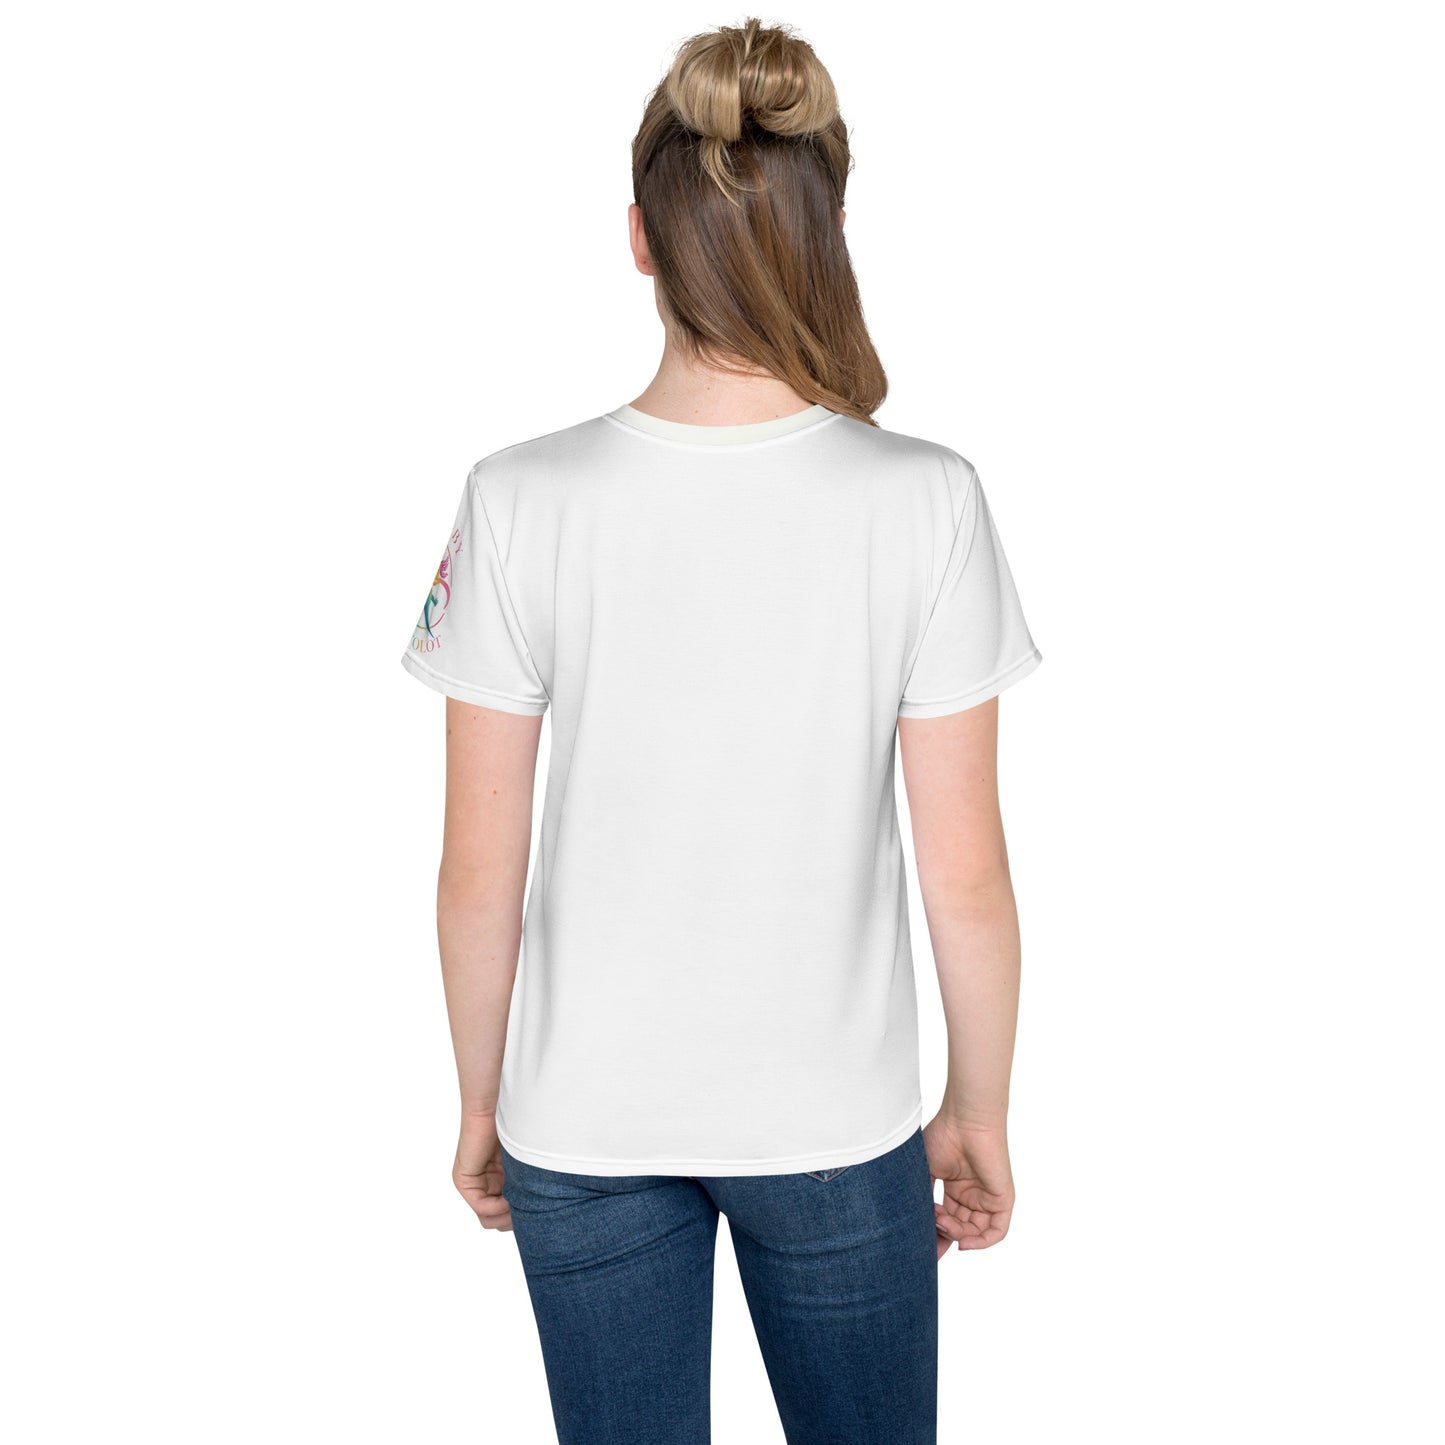 "Axis blir lugn" T-shirt för barn/ungdom 8-18år, med helt tryck på framsidan samt rundad hals, vit rygg och ärm.